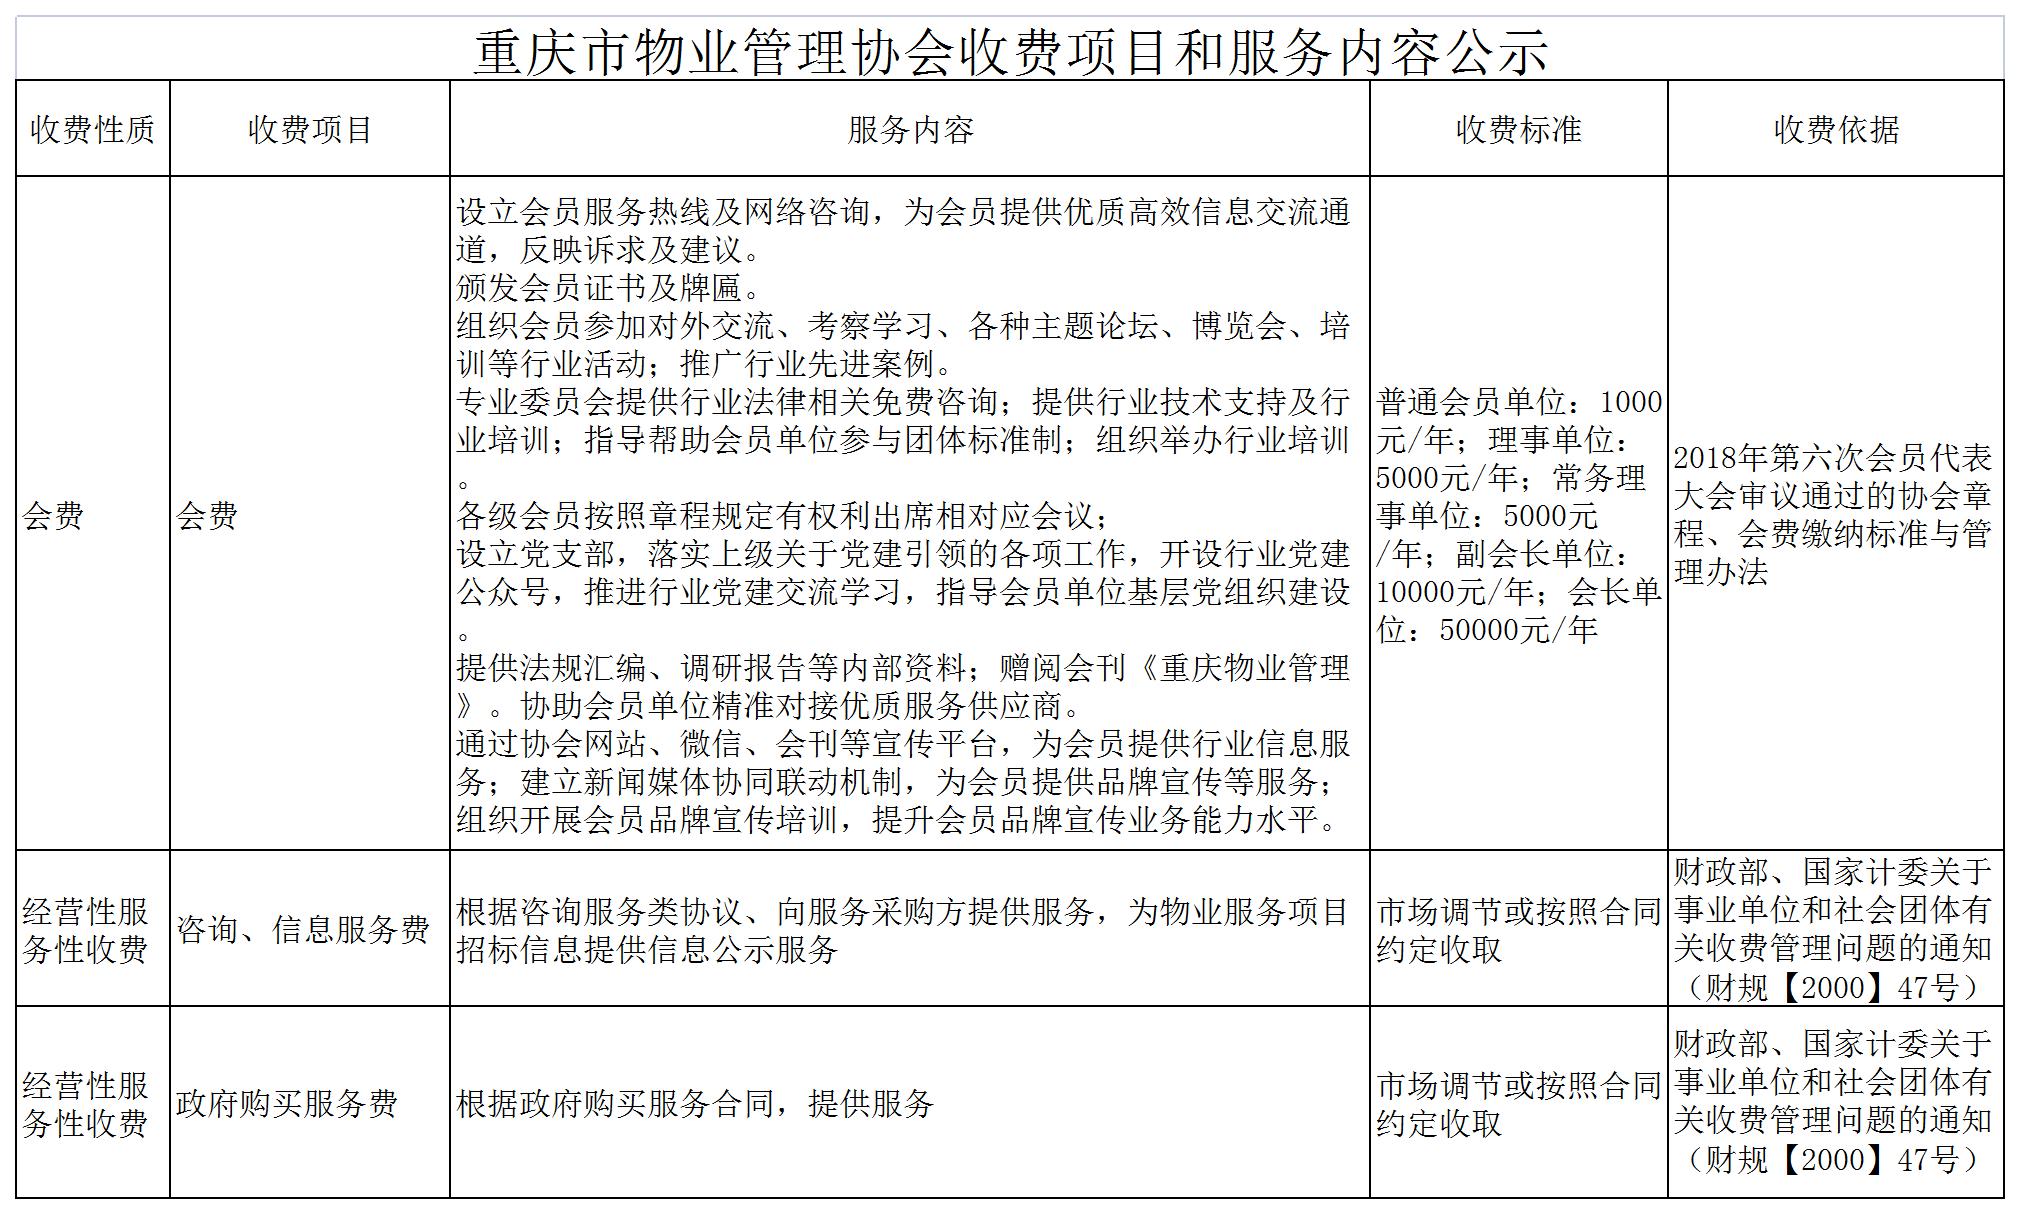 重庆市物业管理协会收费项目和服务内容公示修改(1).jpg